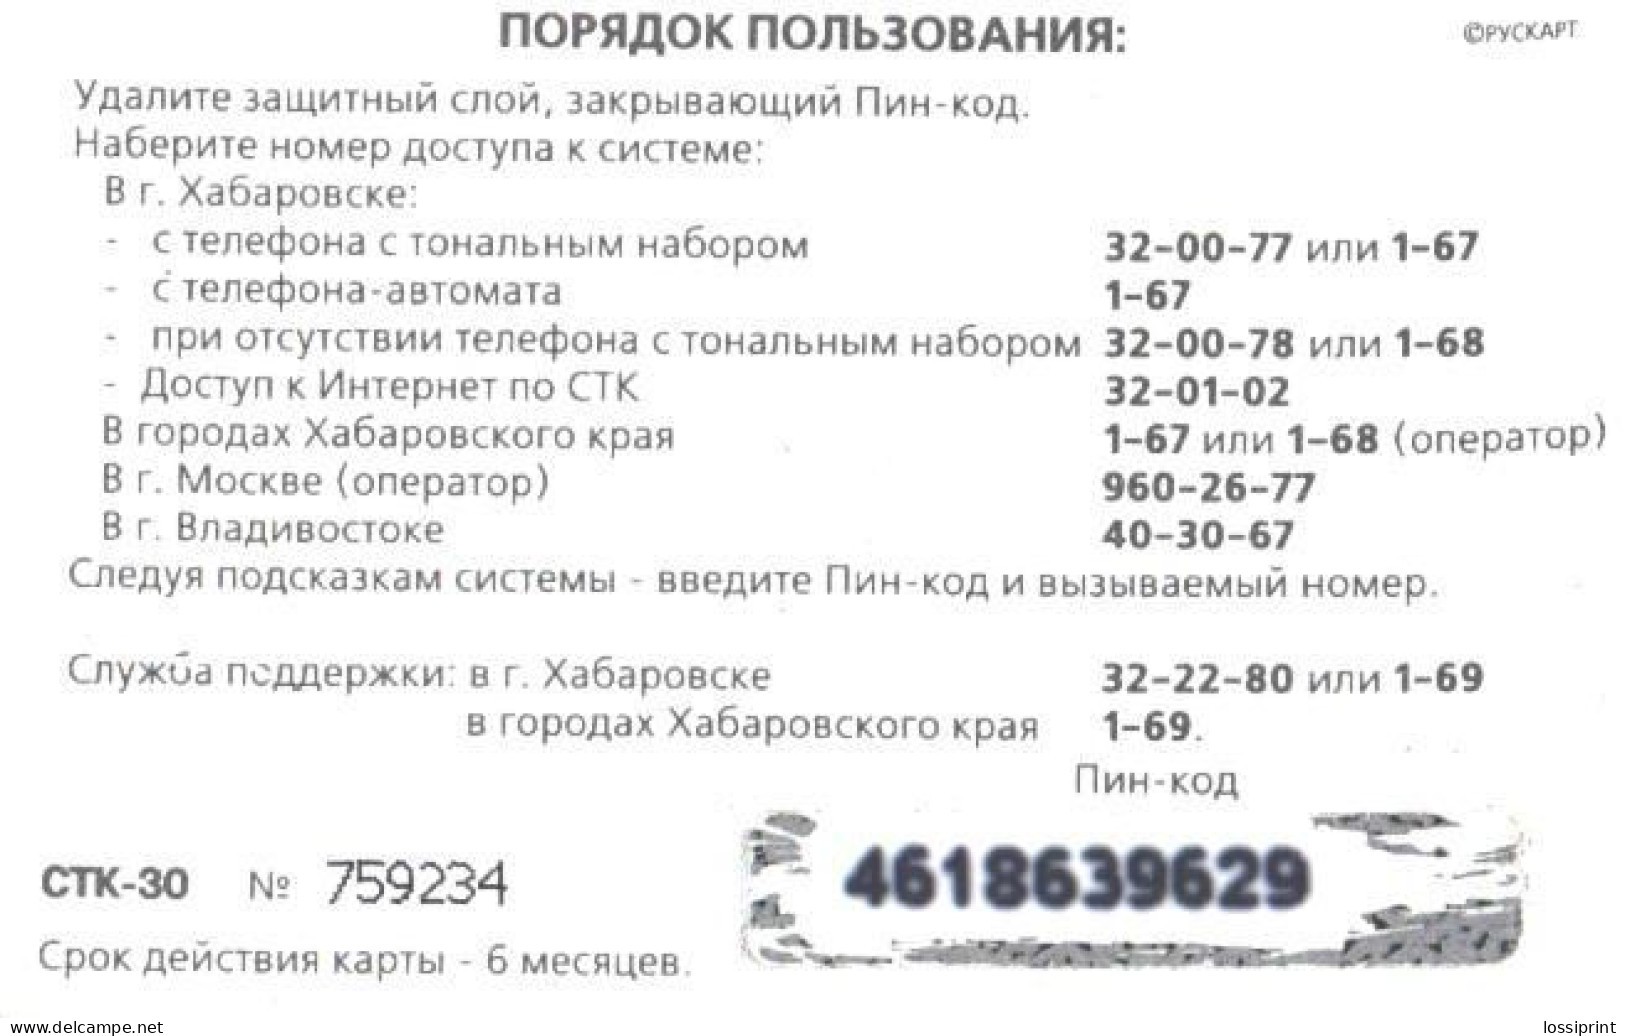 Russia:Used Phonecard, Azpektrosvjaz, STK-30, Tiger - Russia